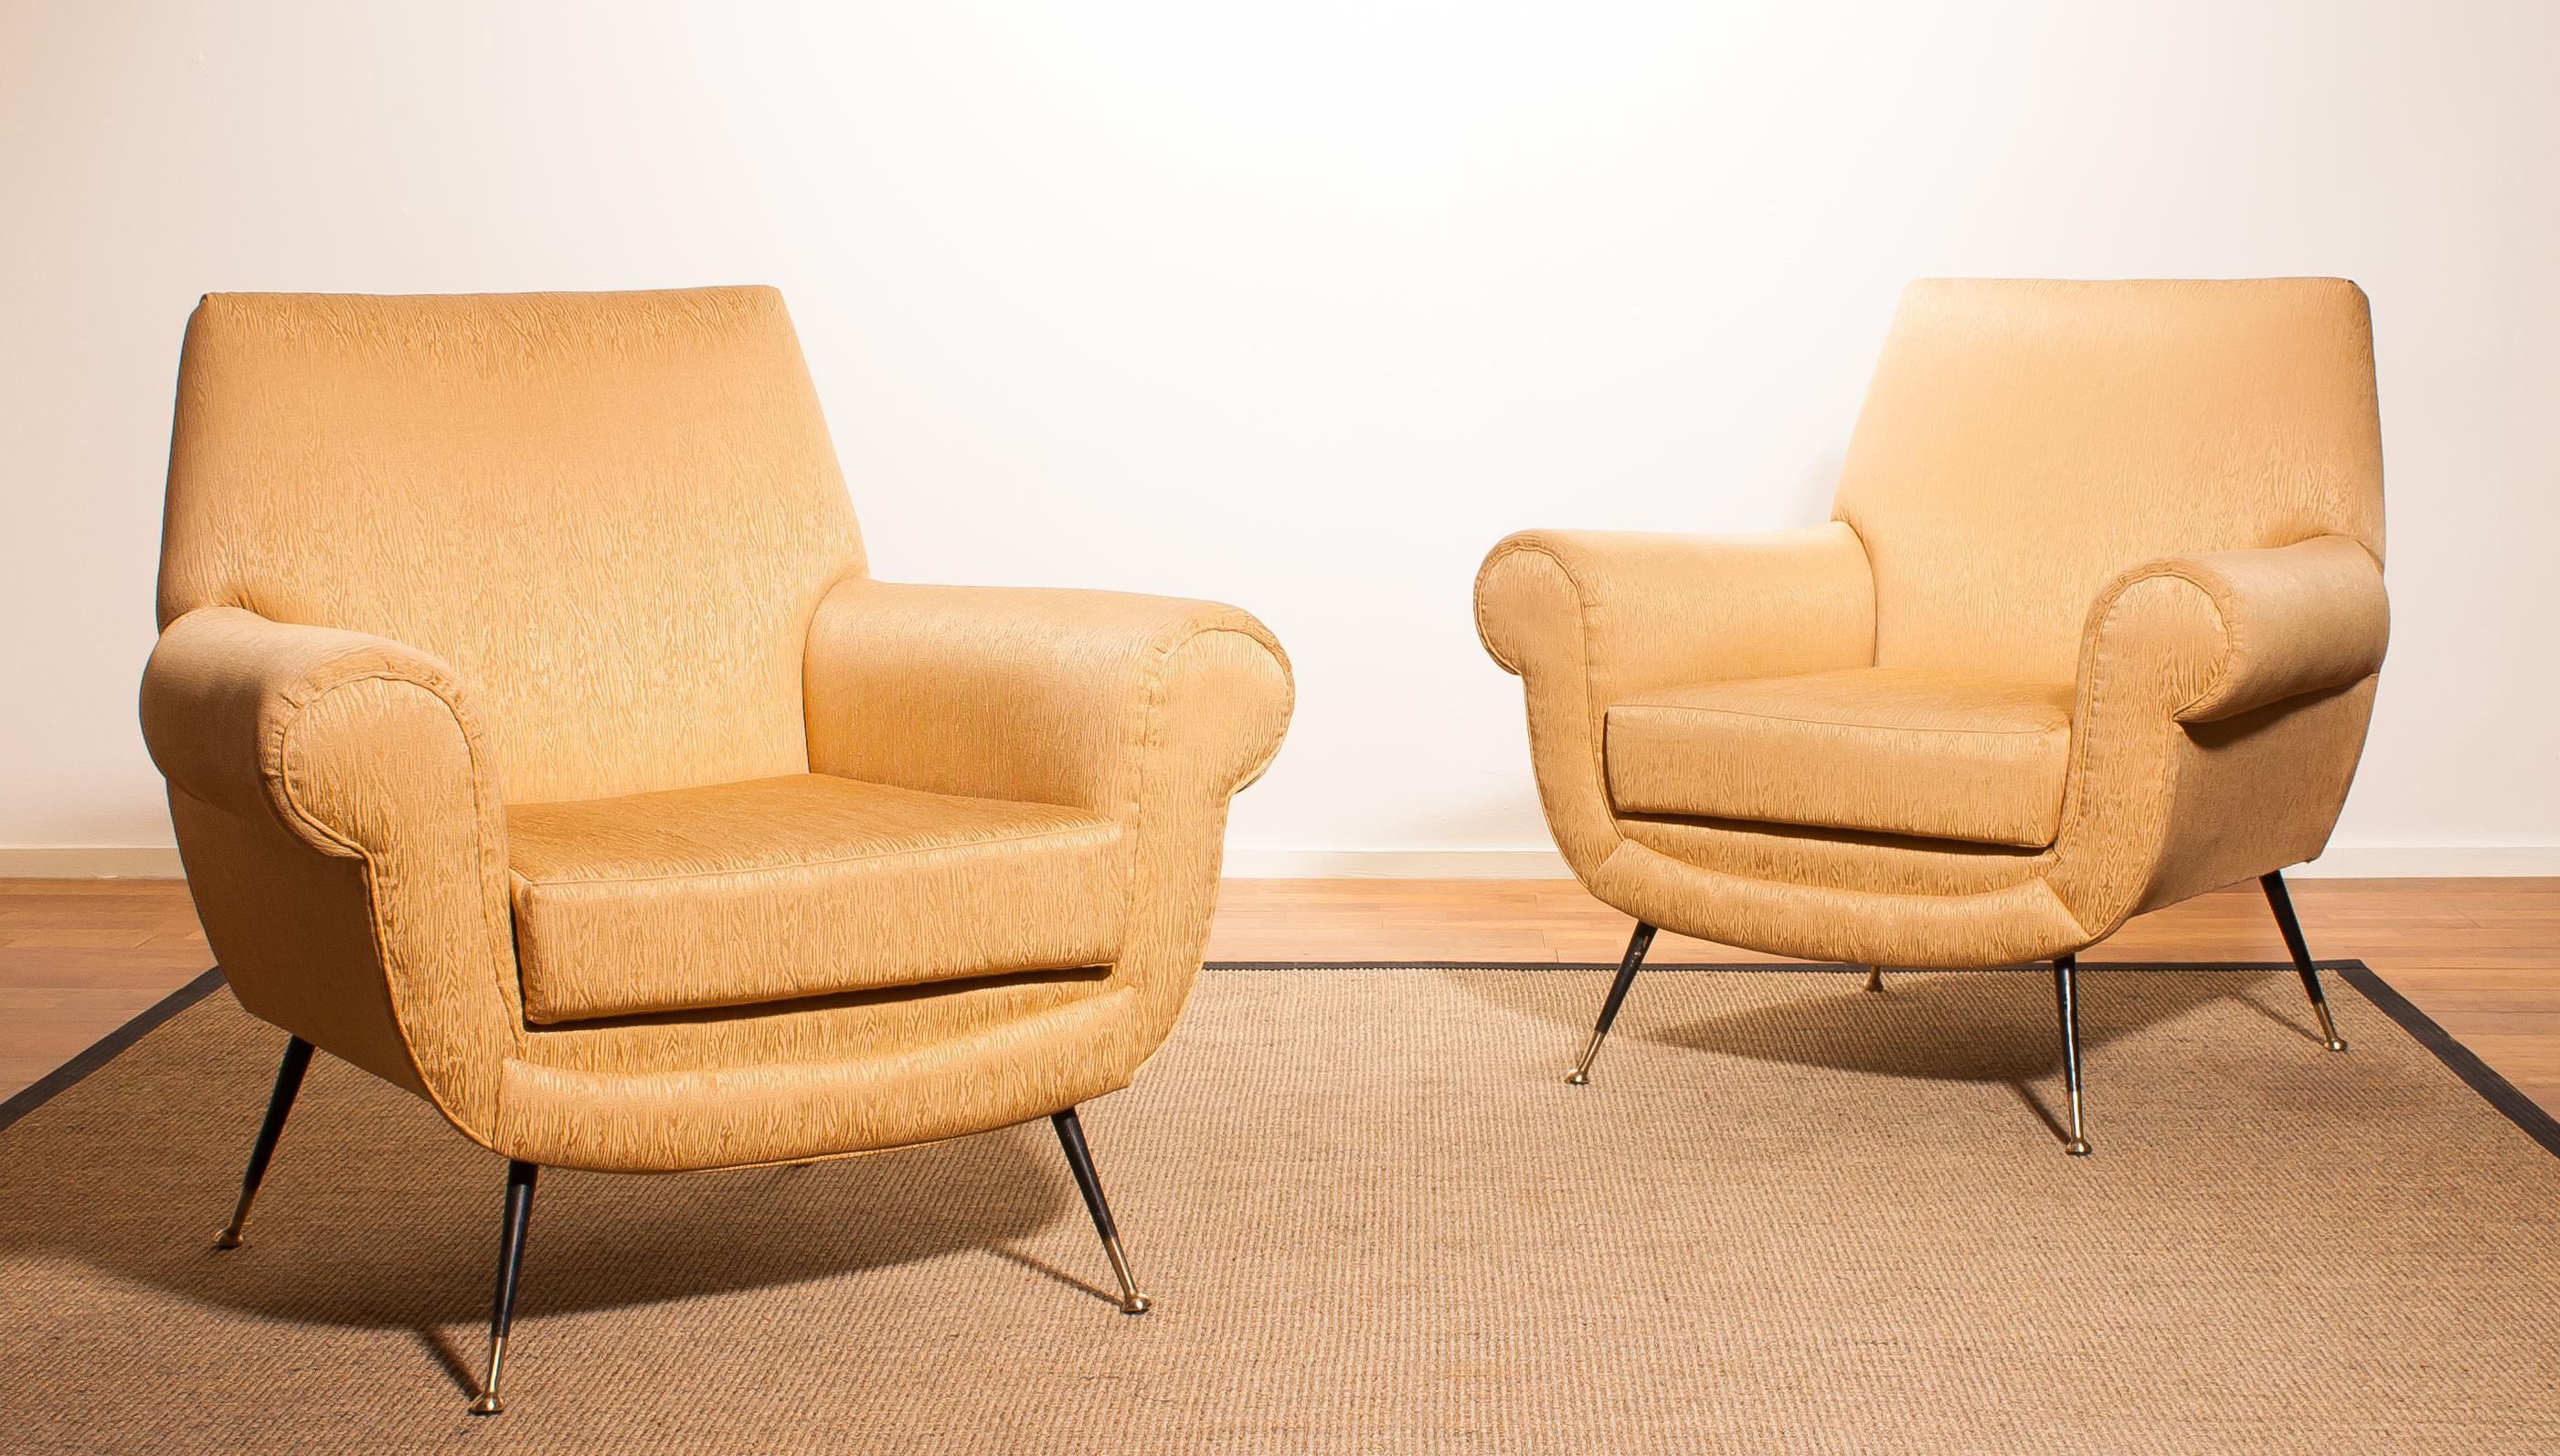 Italian Golden Jacquard Upholstered Easy Chairs by Gigi Radice for Minotti, Brass Legs